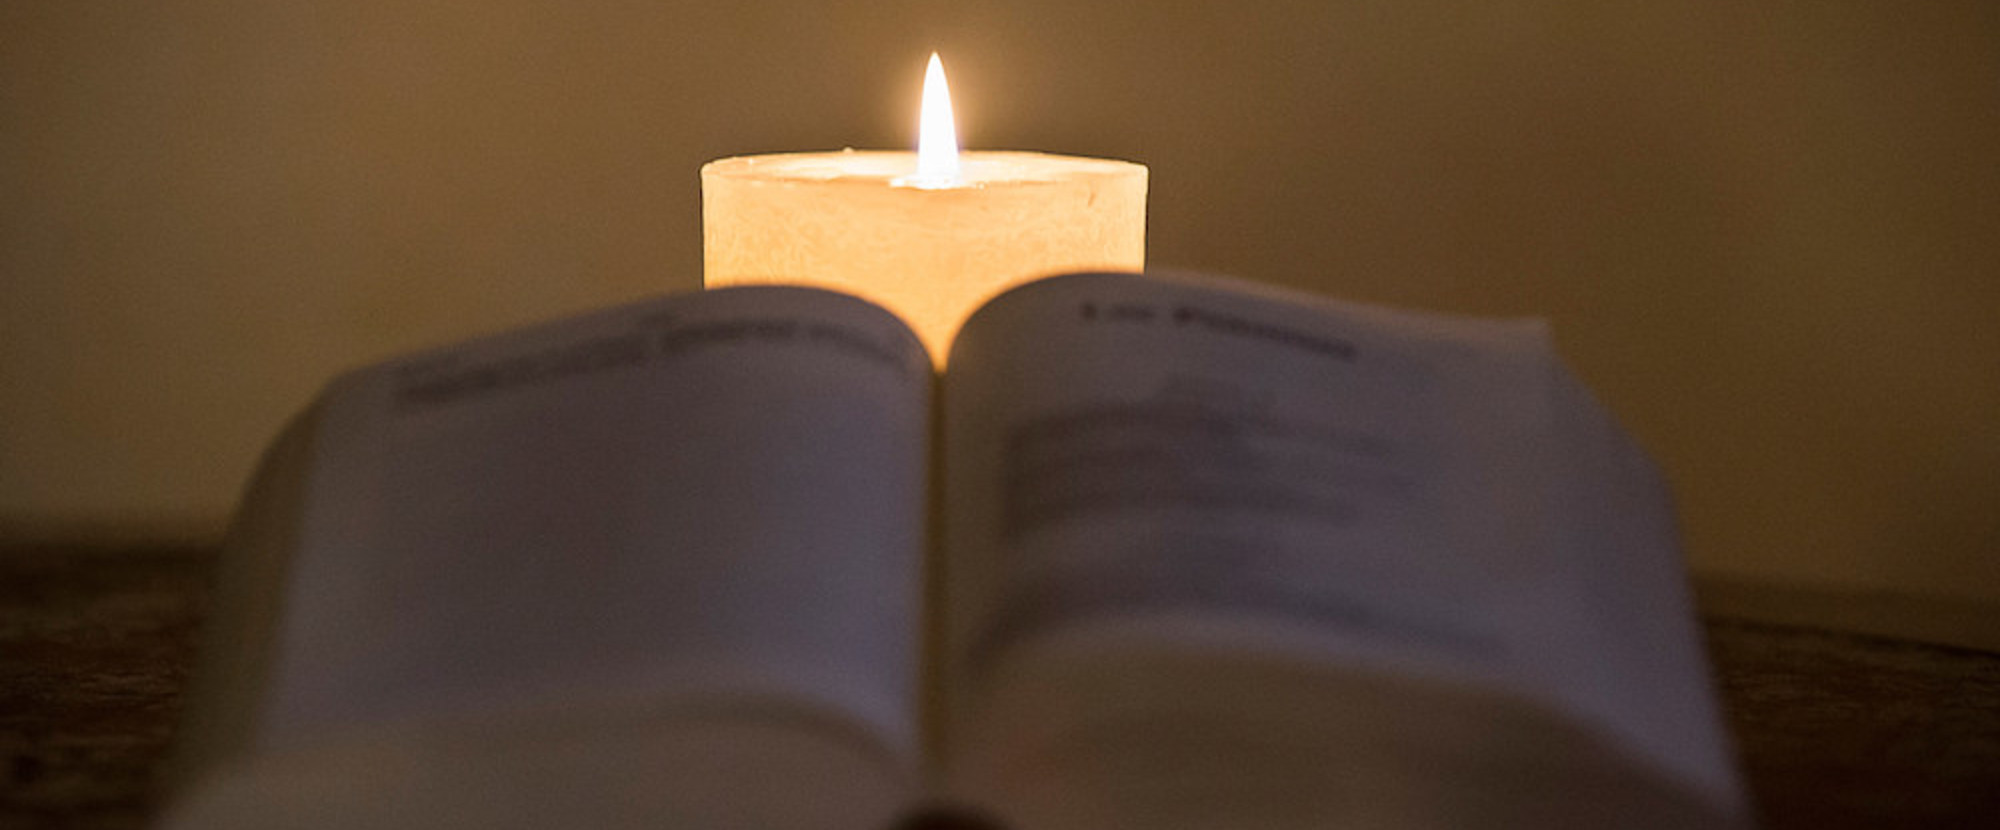 Eine Bibel liegt aufgeschlagen auf einem Tisch, dahinter brennt eine weiße Kerze am 3. Januar 2020. (Aufnahmeort unbekannt)